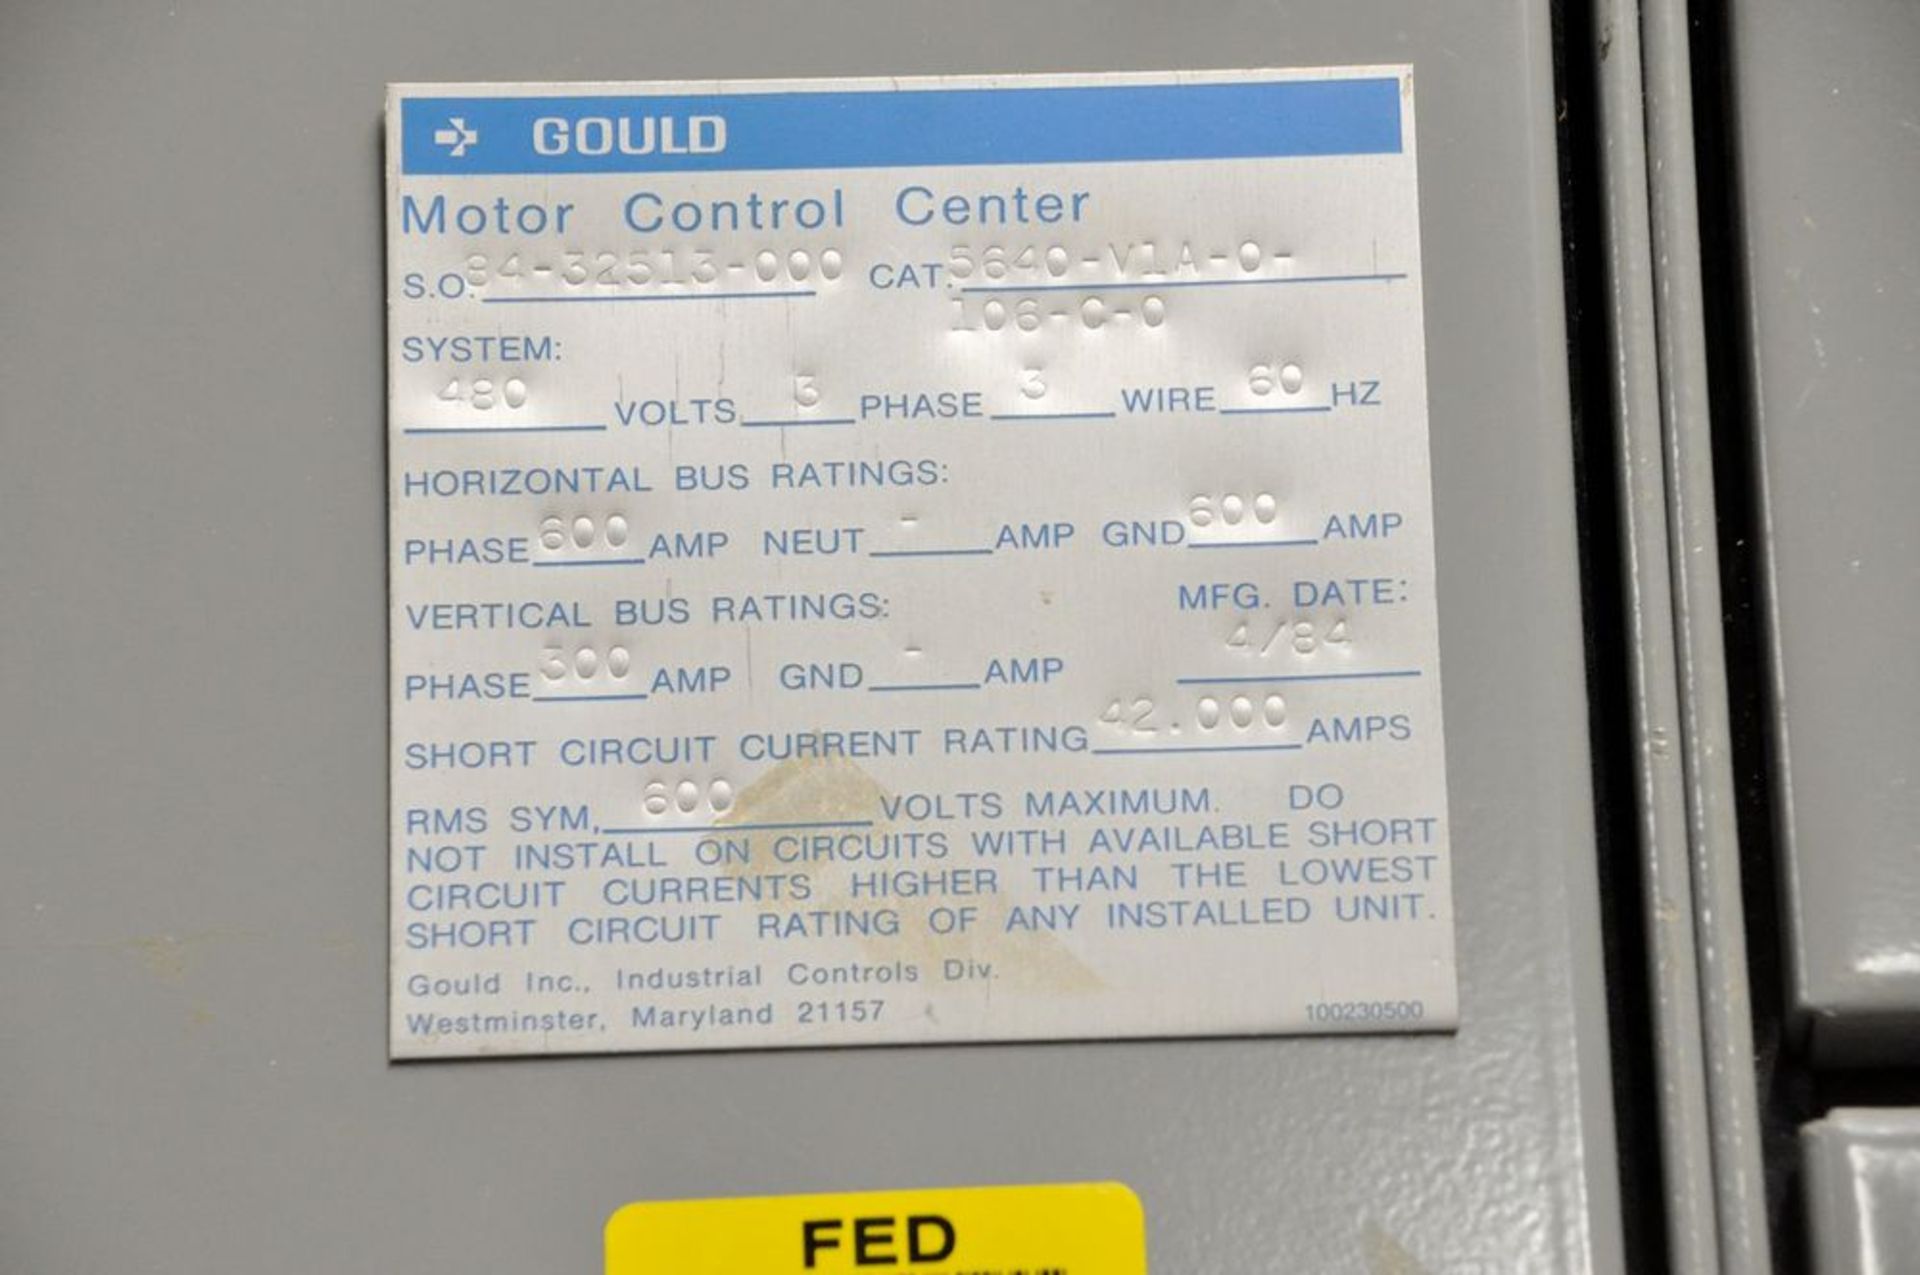 Gould Cat. No. 5640-V1A-0-106-C-0 Motor Control Center, 480v, 3-PH, 600-Amp Horizontal, 300-Amp - Image 2 of 2